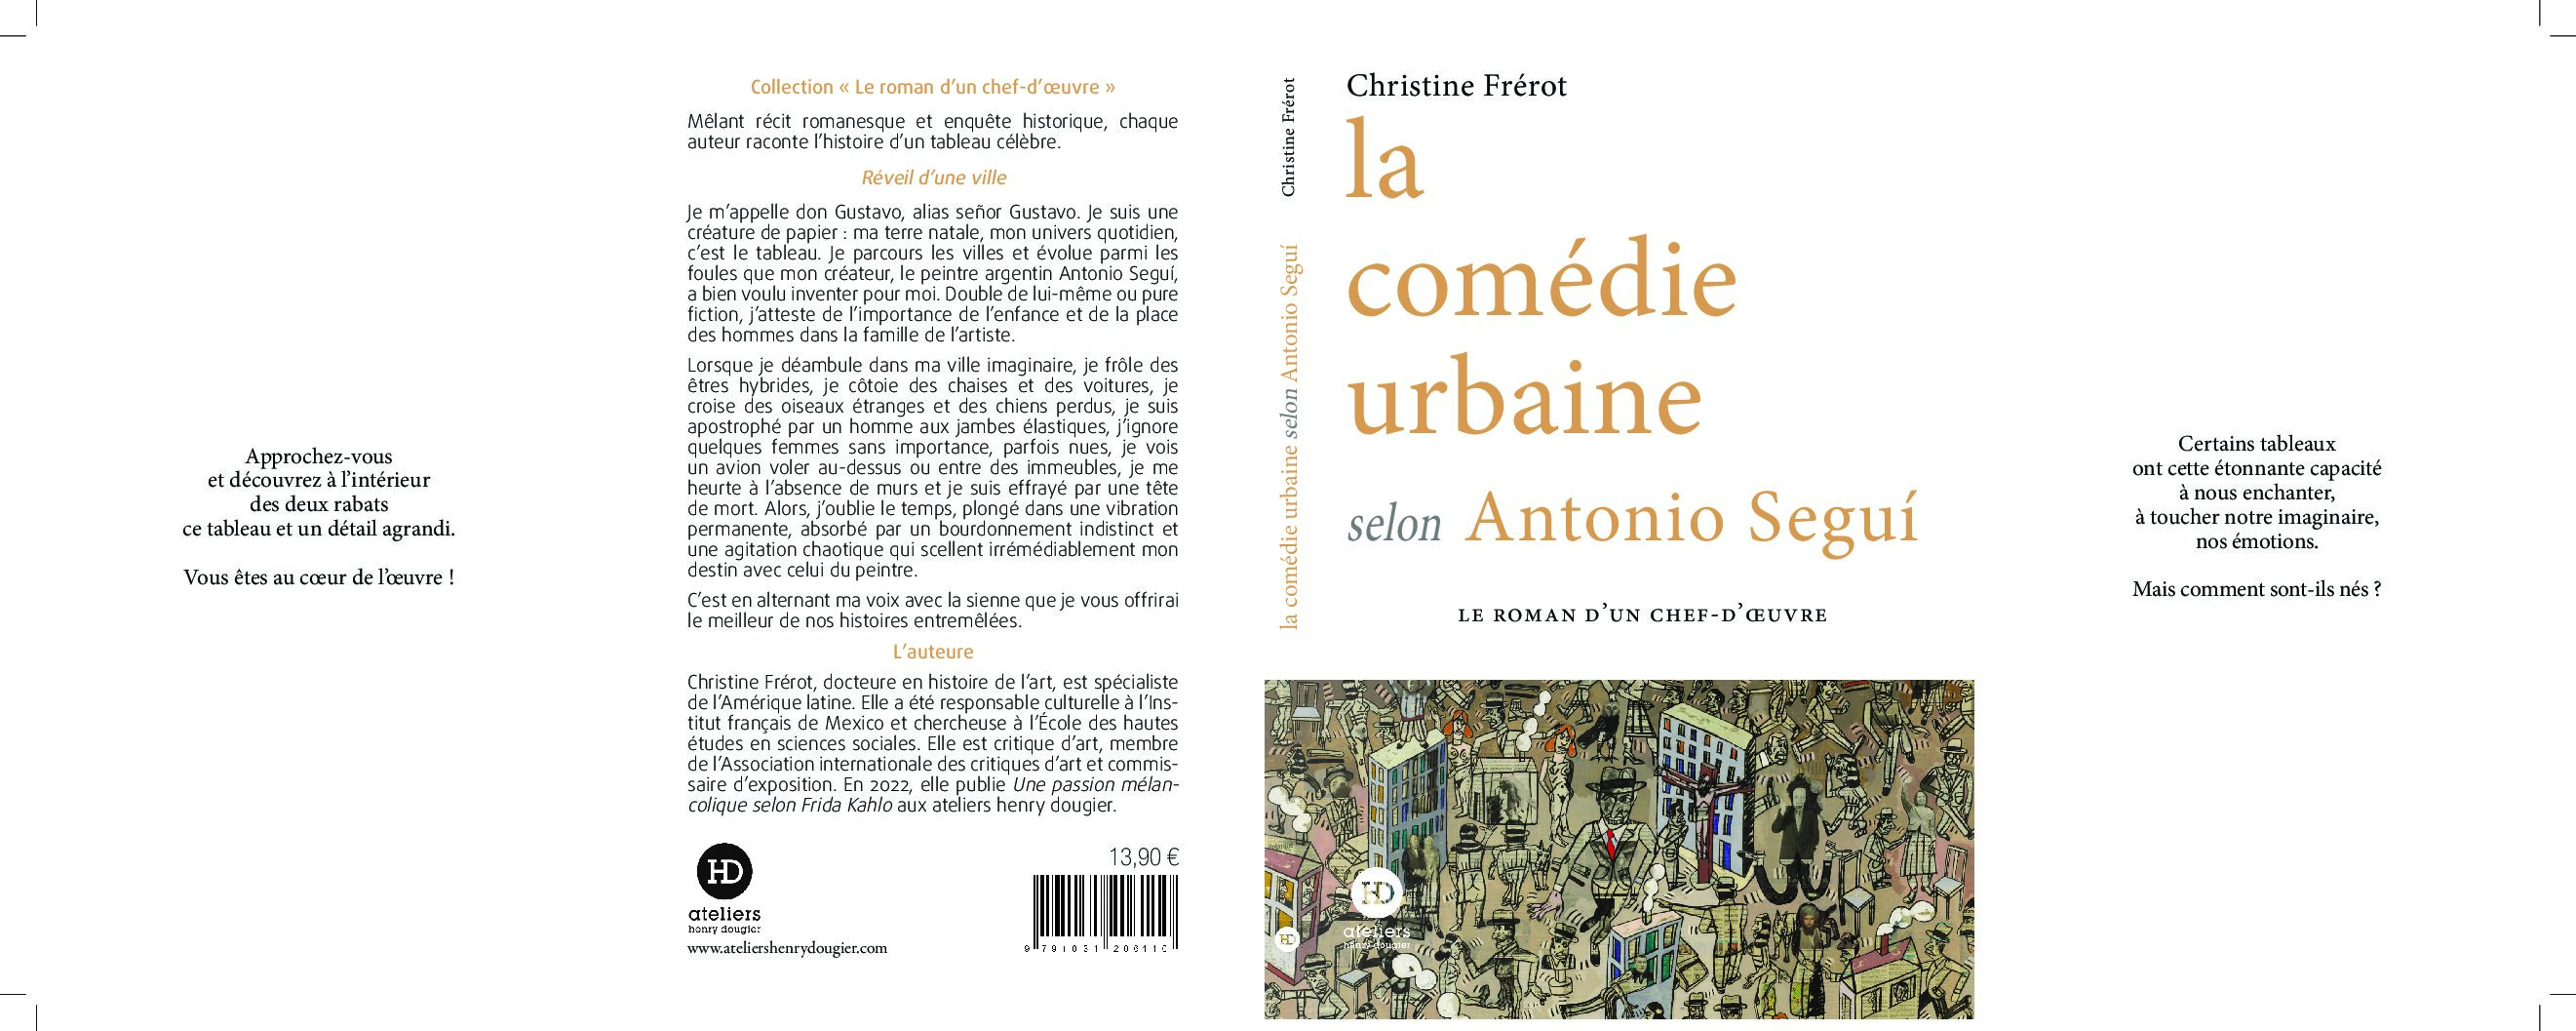 La comédie urbaine selon Antonio Segui, éditions ateliers henry dougier, date de parution 6 juin 2024